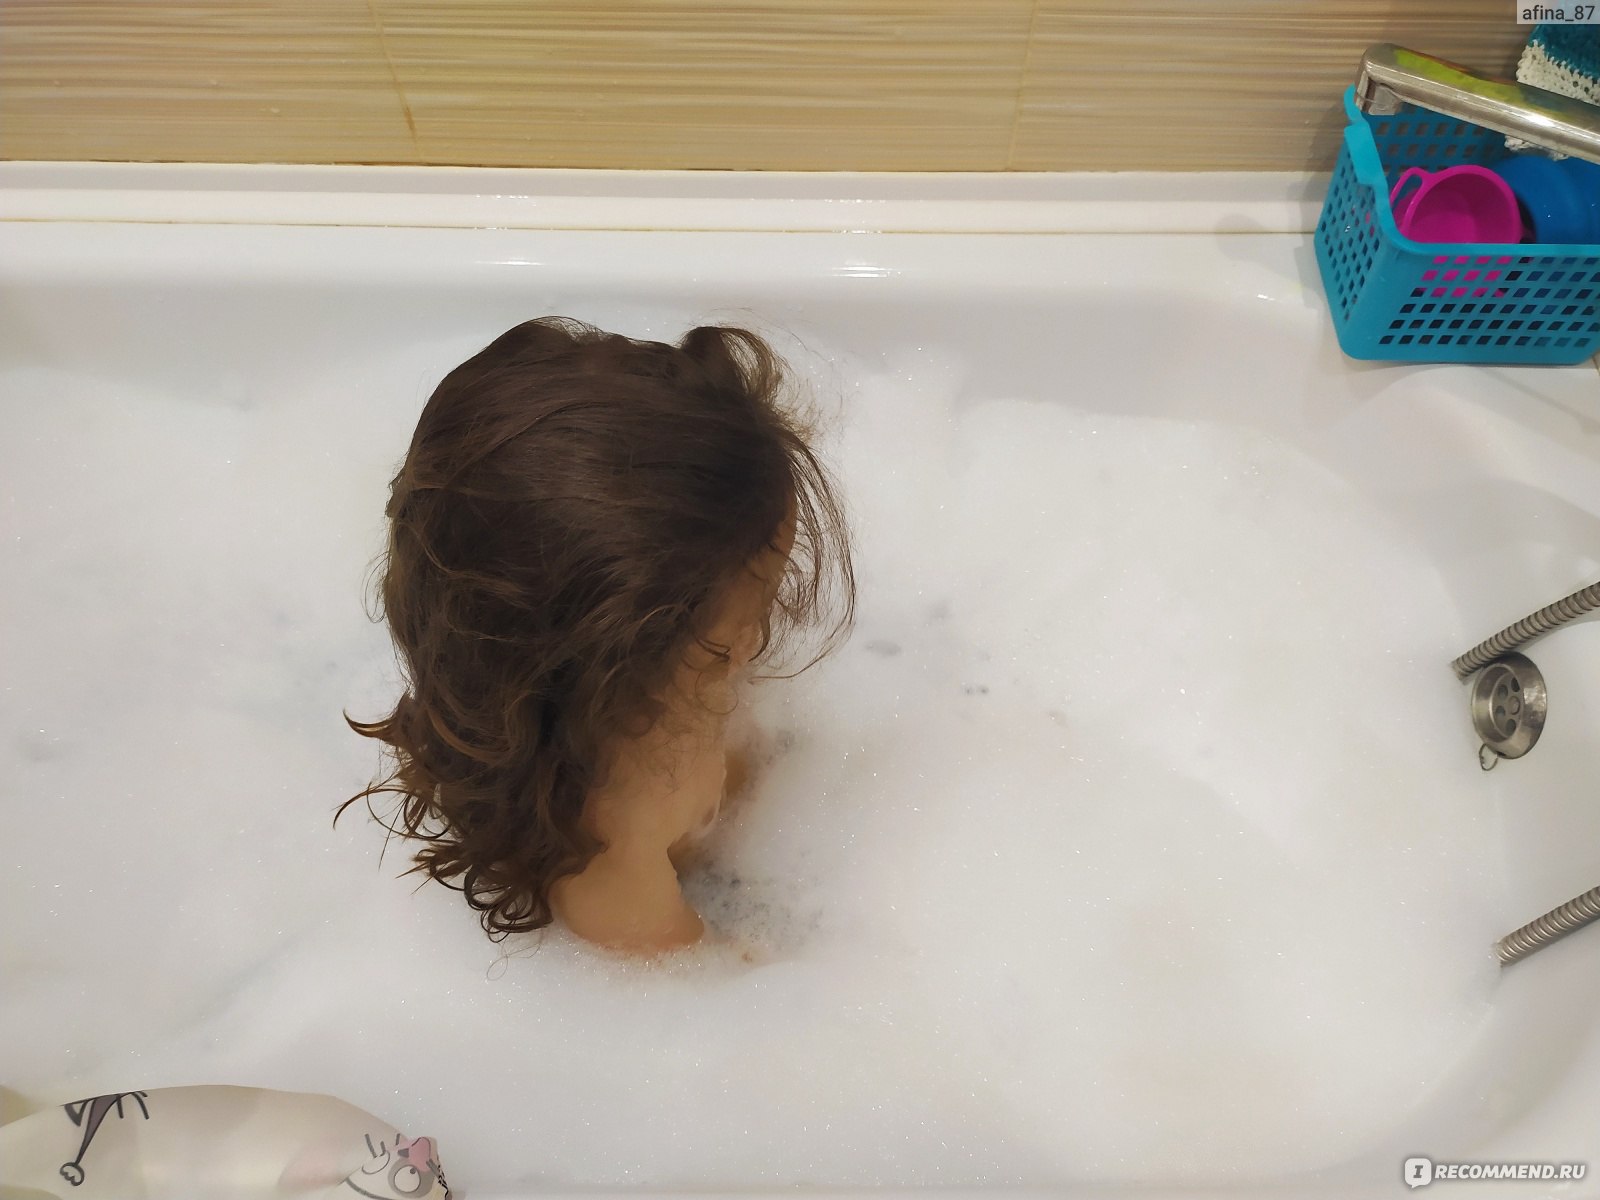 Дочка мылась в душе. Дочь купается в ванной. Дочка моется. Принцесса в ванной. Маленькая принцесса в ванне.